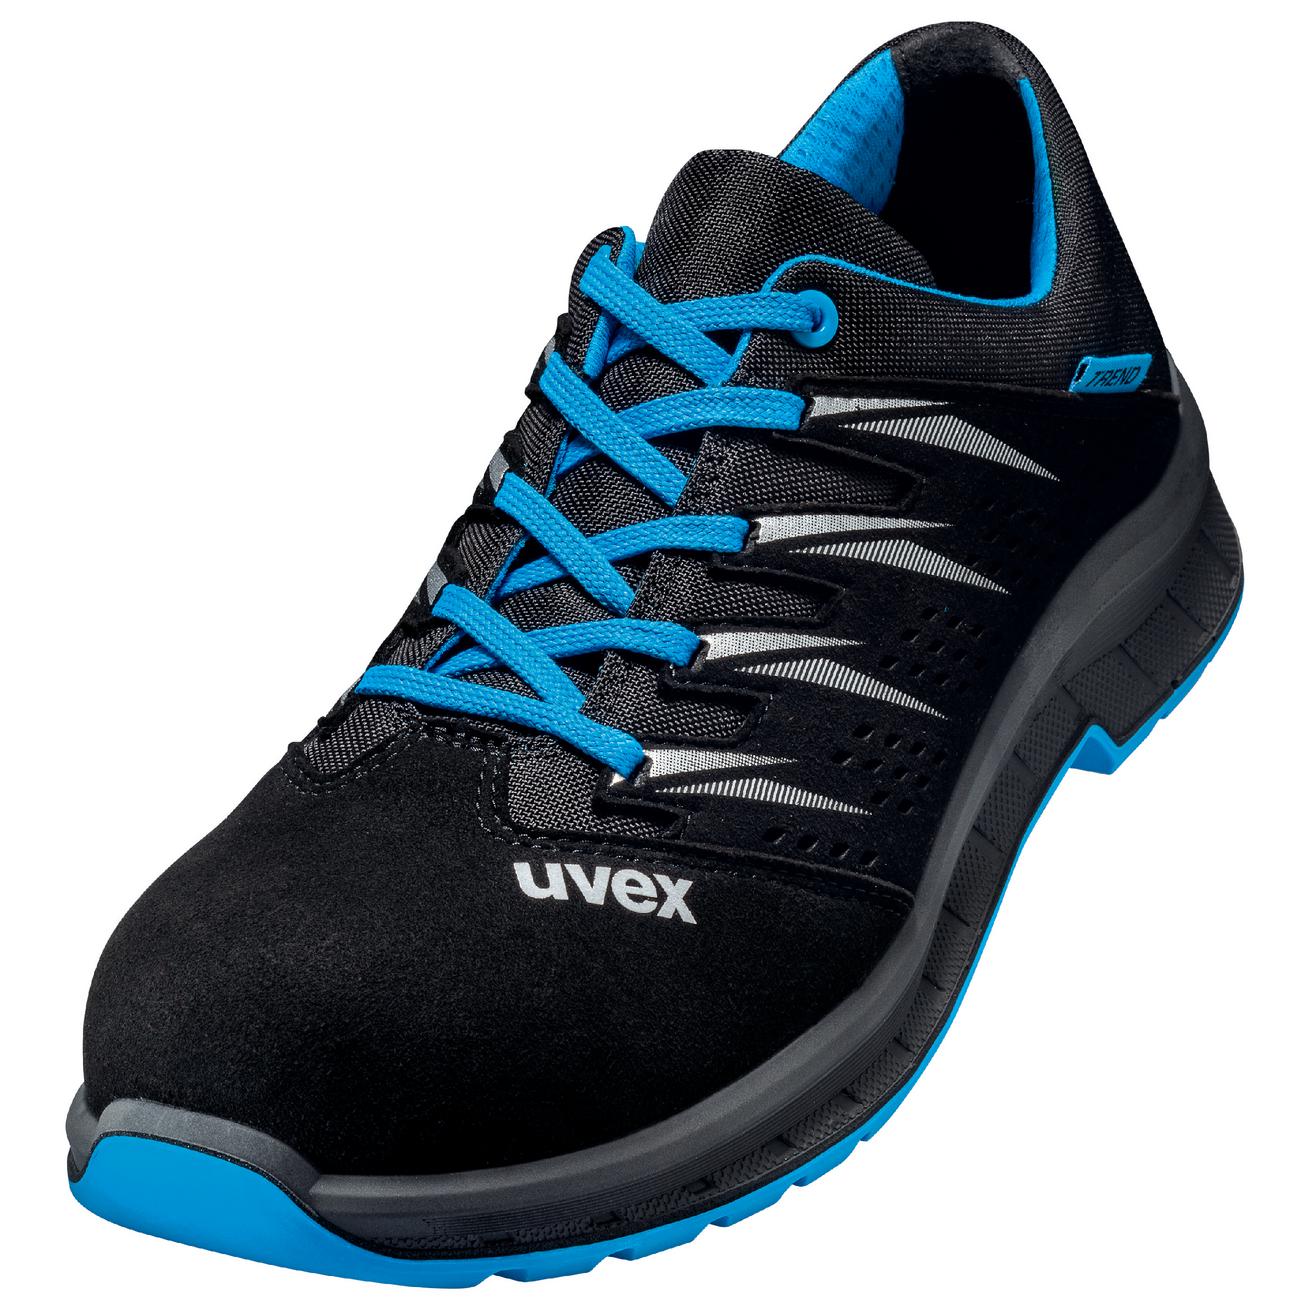 Perf. polobotka obuv uvex 2 trend, šíře 11, S1 SRC, černá/modrá 6937 Velikost: 51, Kód produktu: 6937851